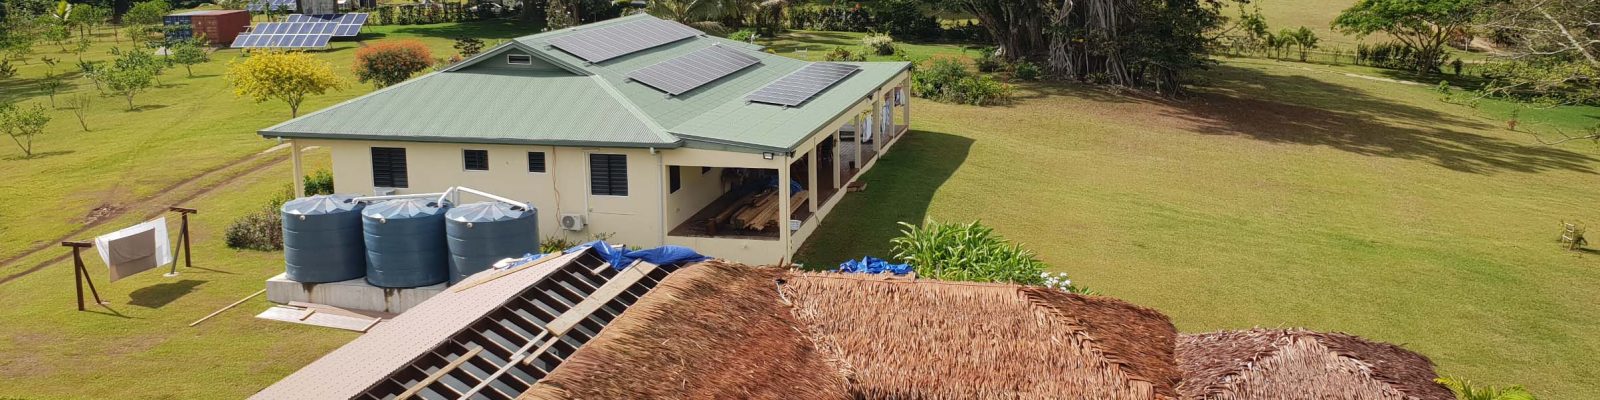 Off Grid Solar System in Port Vila, Vanuatu